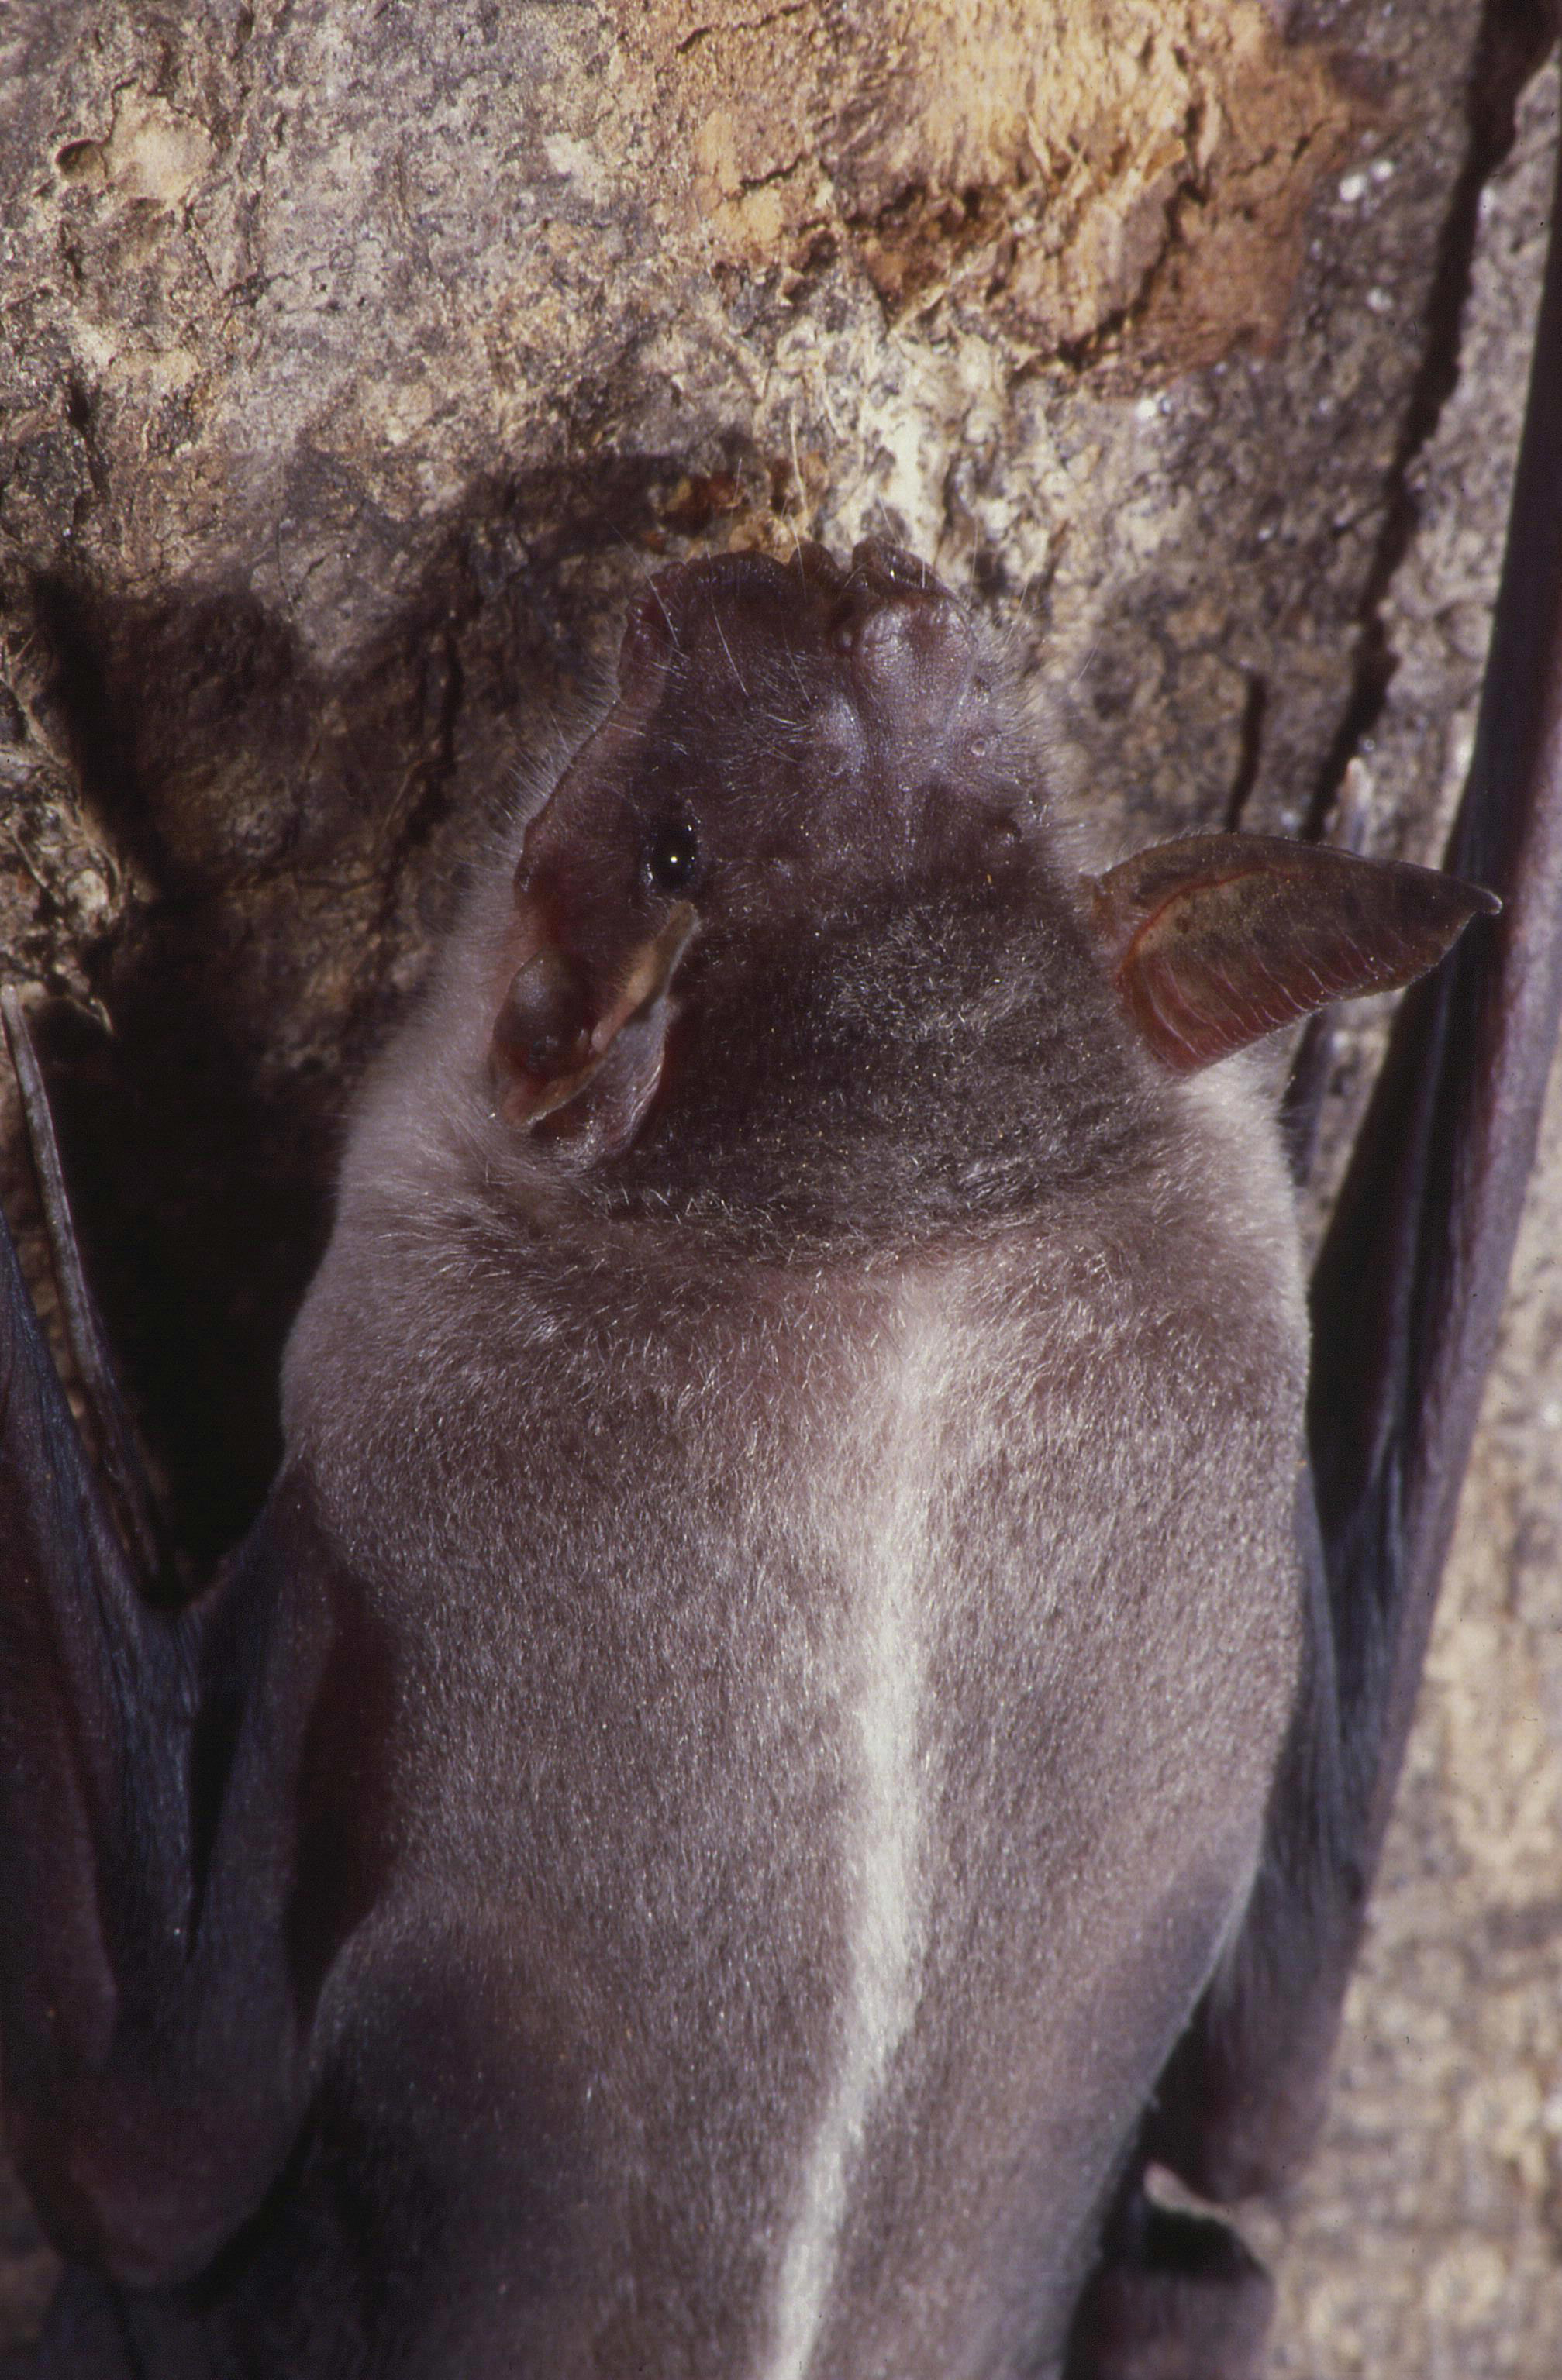 bulldog bat - Wikipedia